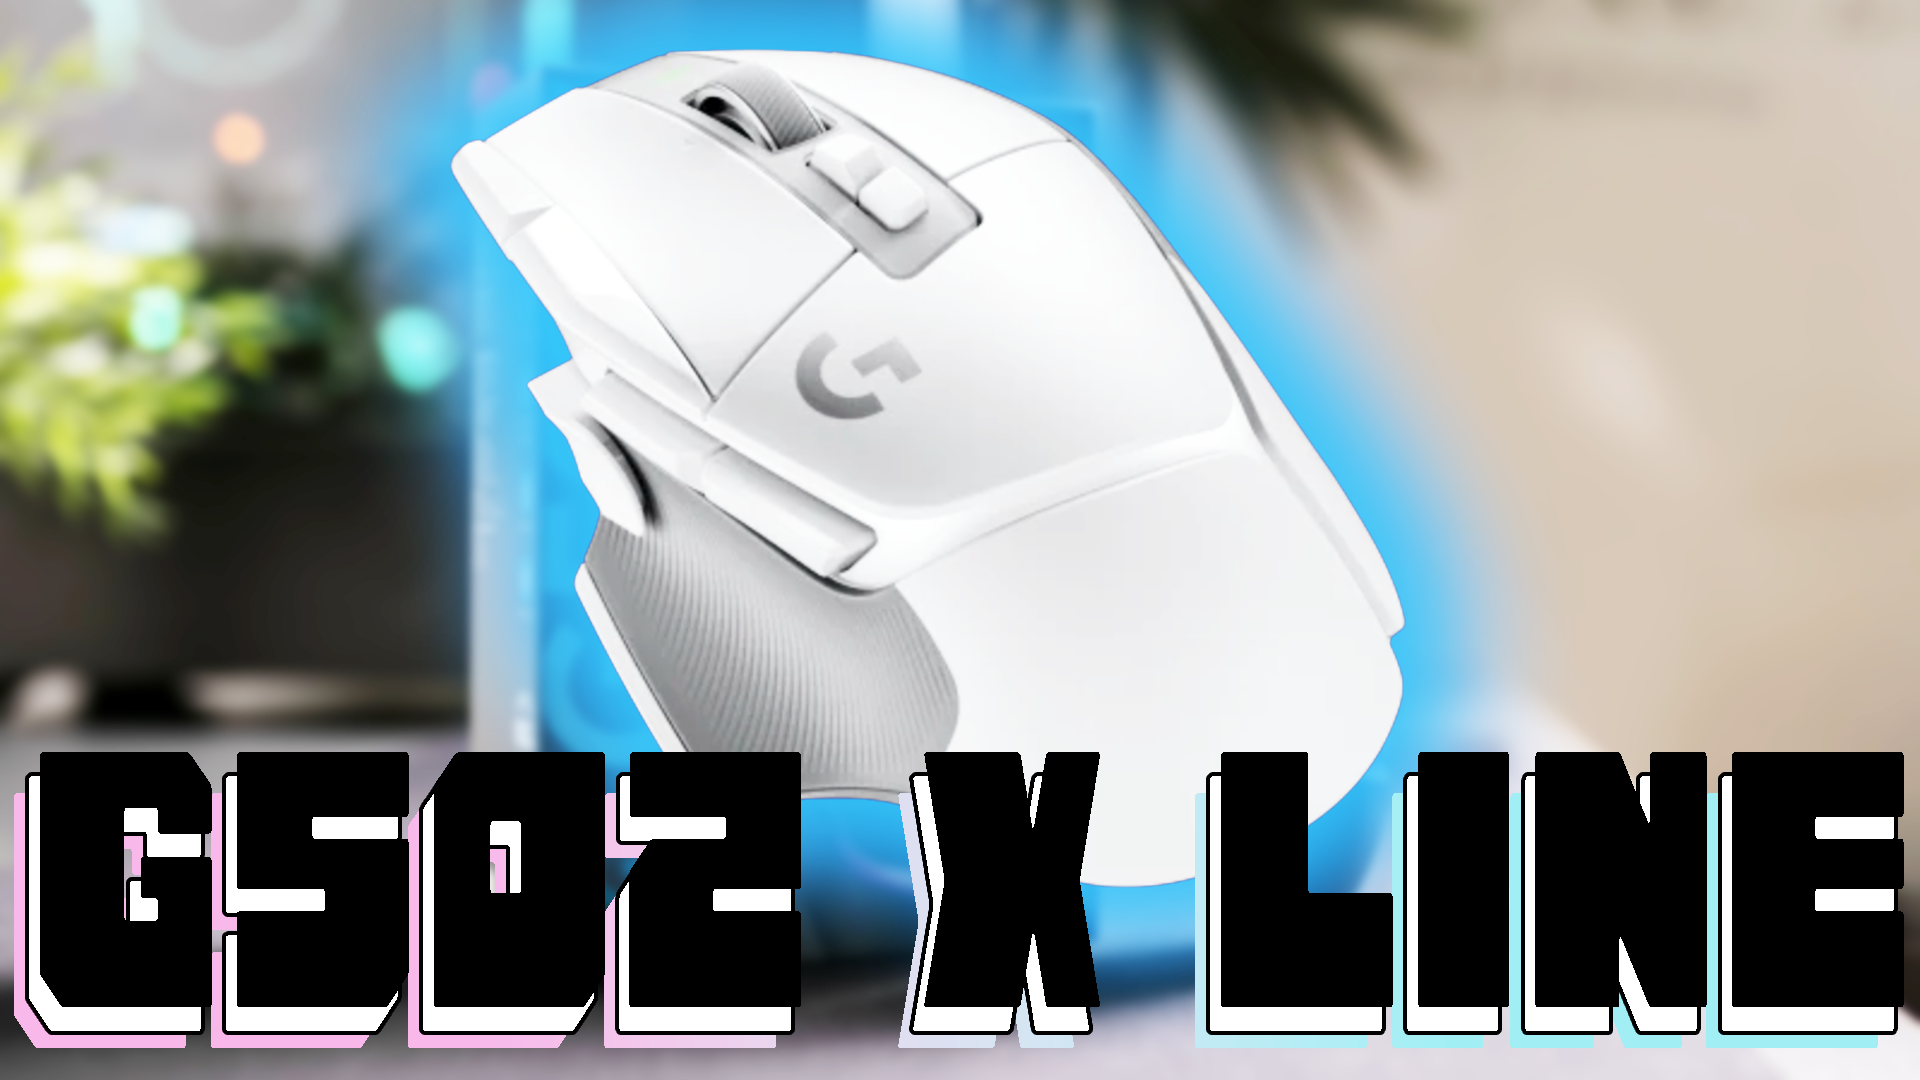 【Logicool G502 X 新型】ついにLogicool G502の新型がやってきた！価格や変更点を解説します！ - みずまるブログ